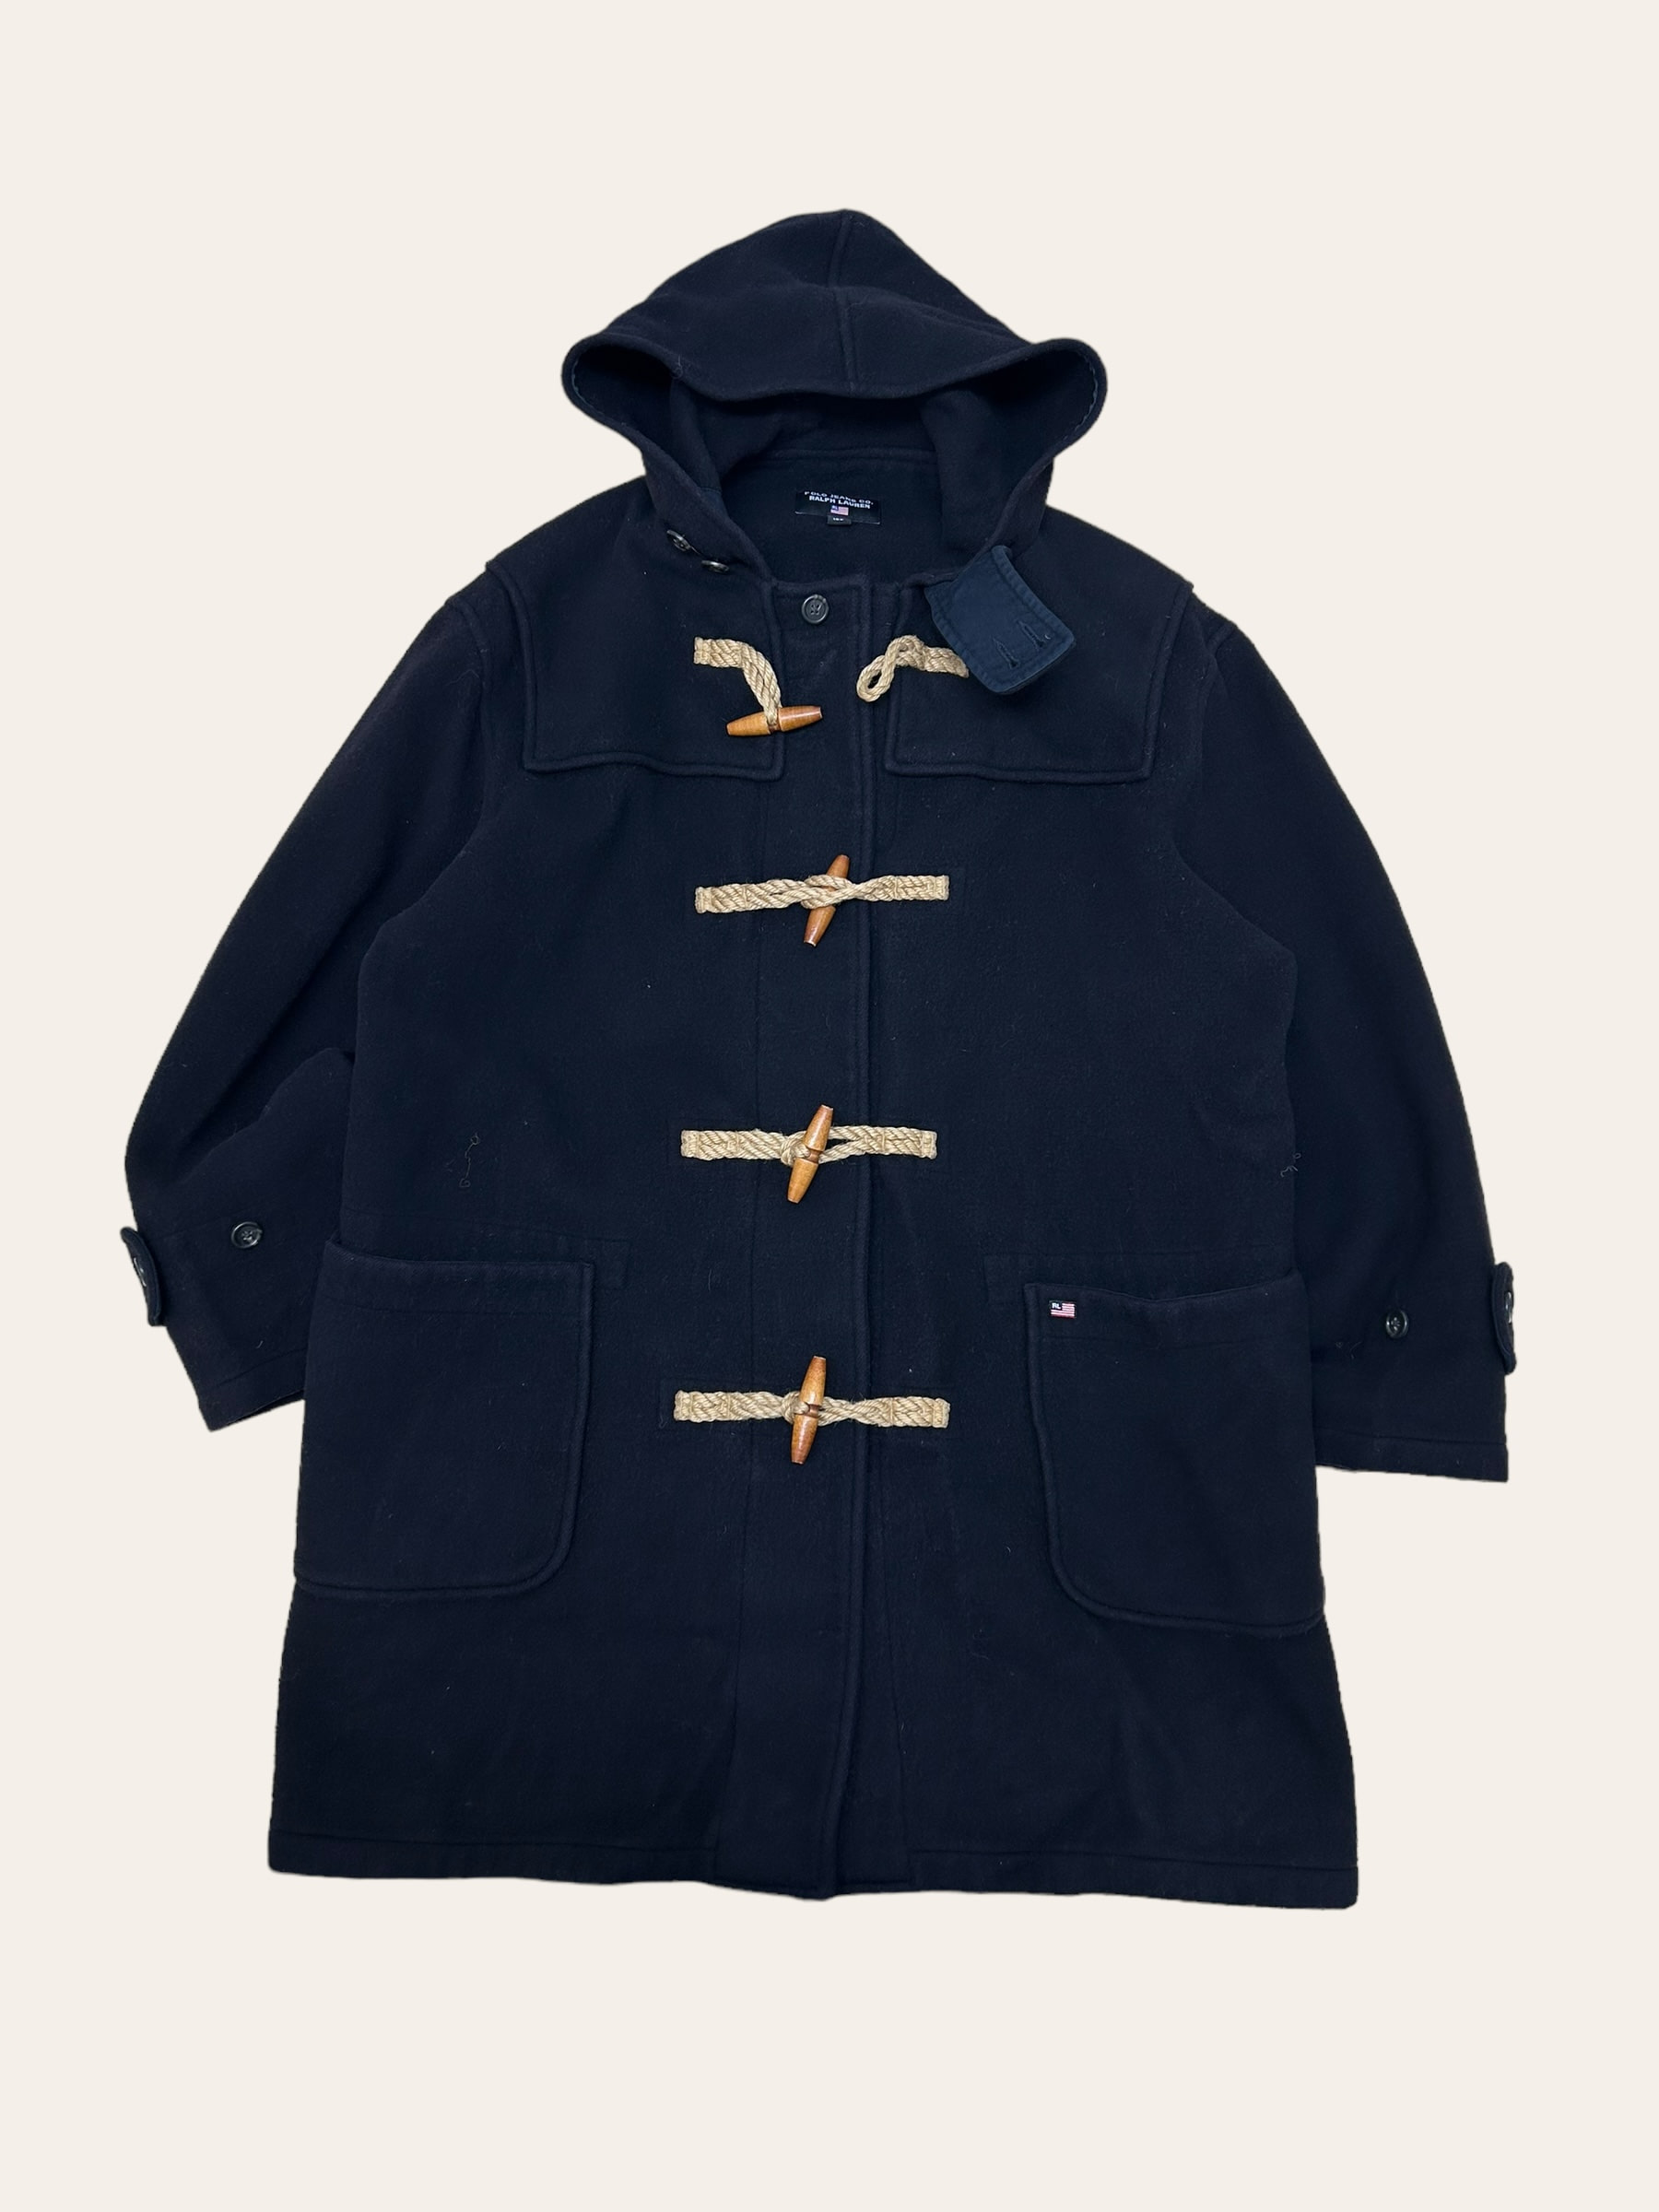 Polo jeans company navy wool duffle coat 100